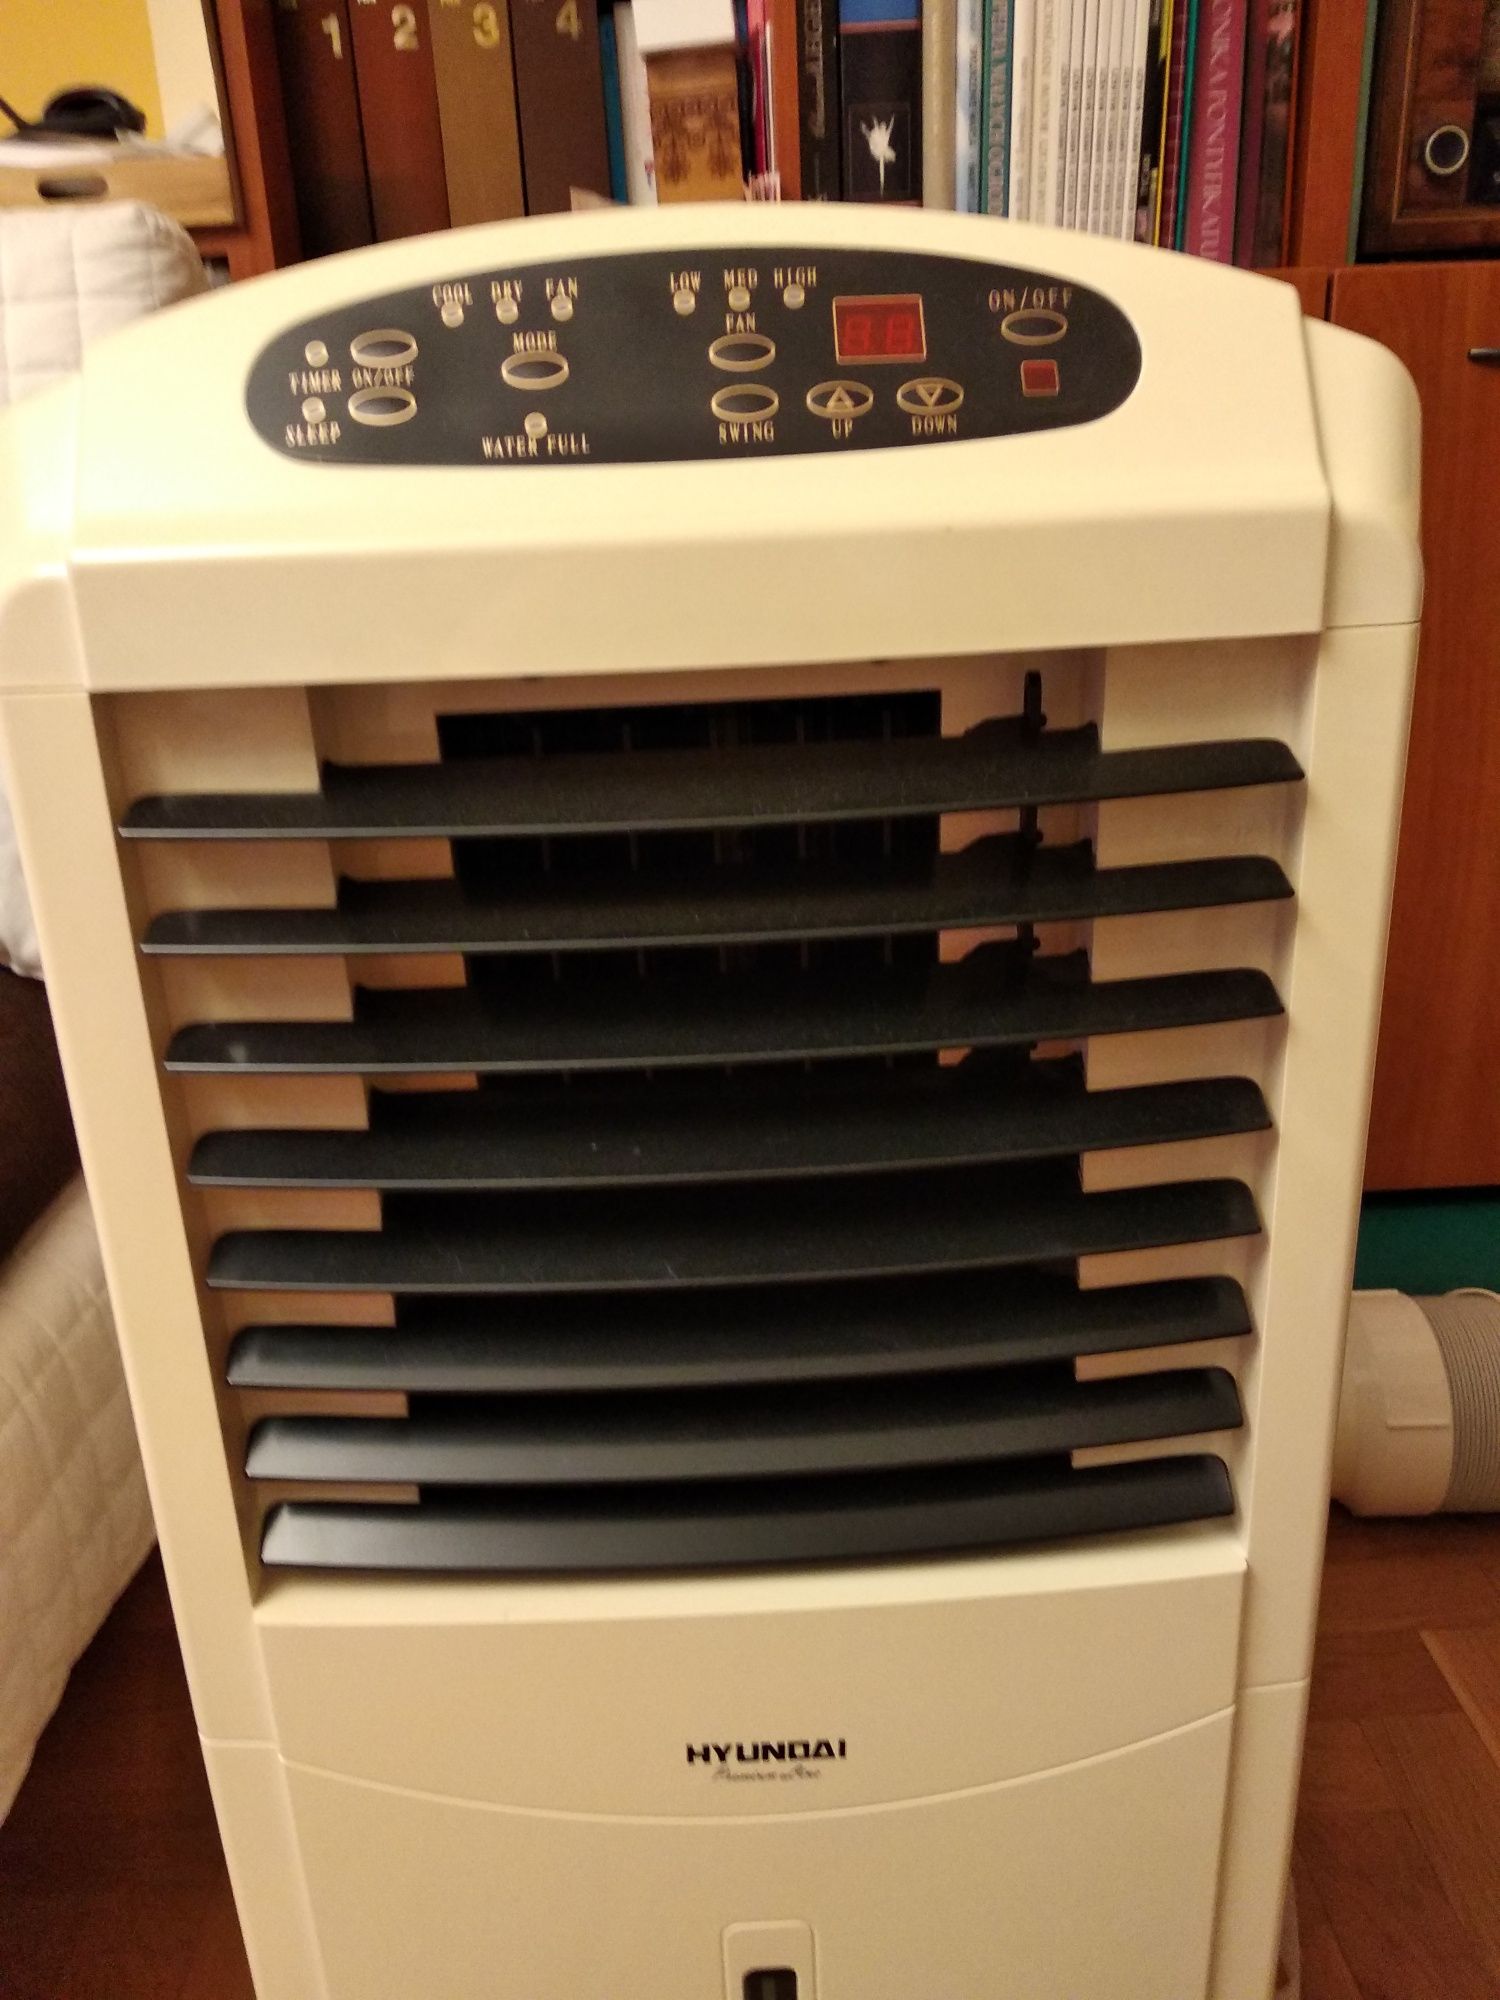 Klimatyzator przenośny marki hyundai model HH-A225